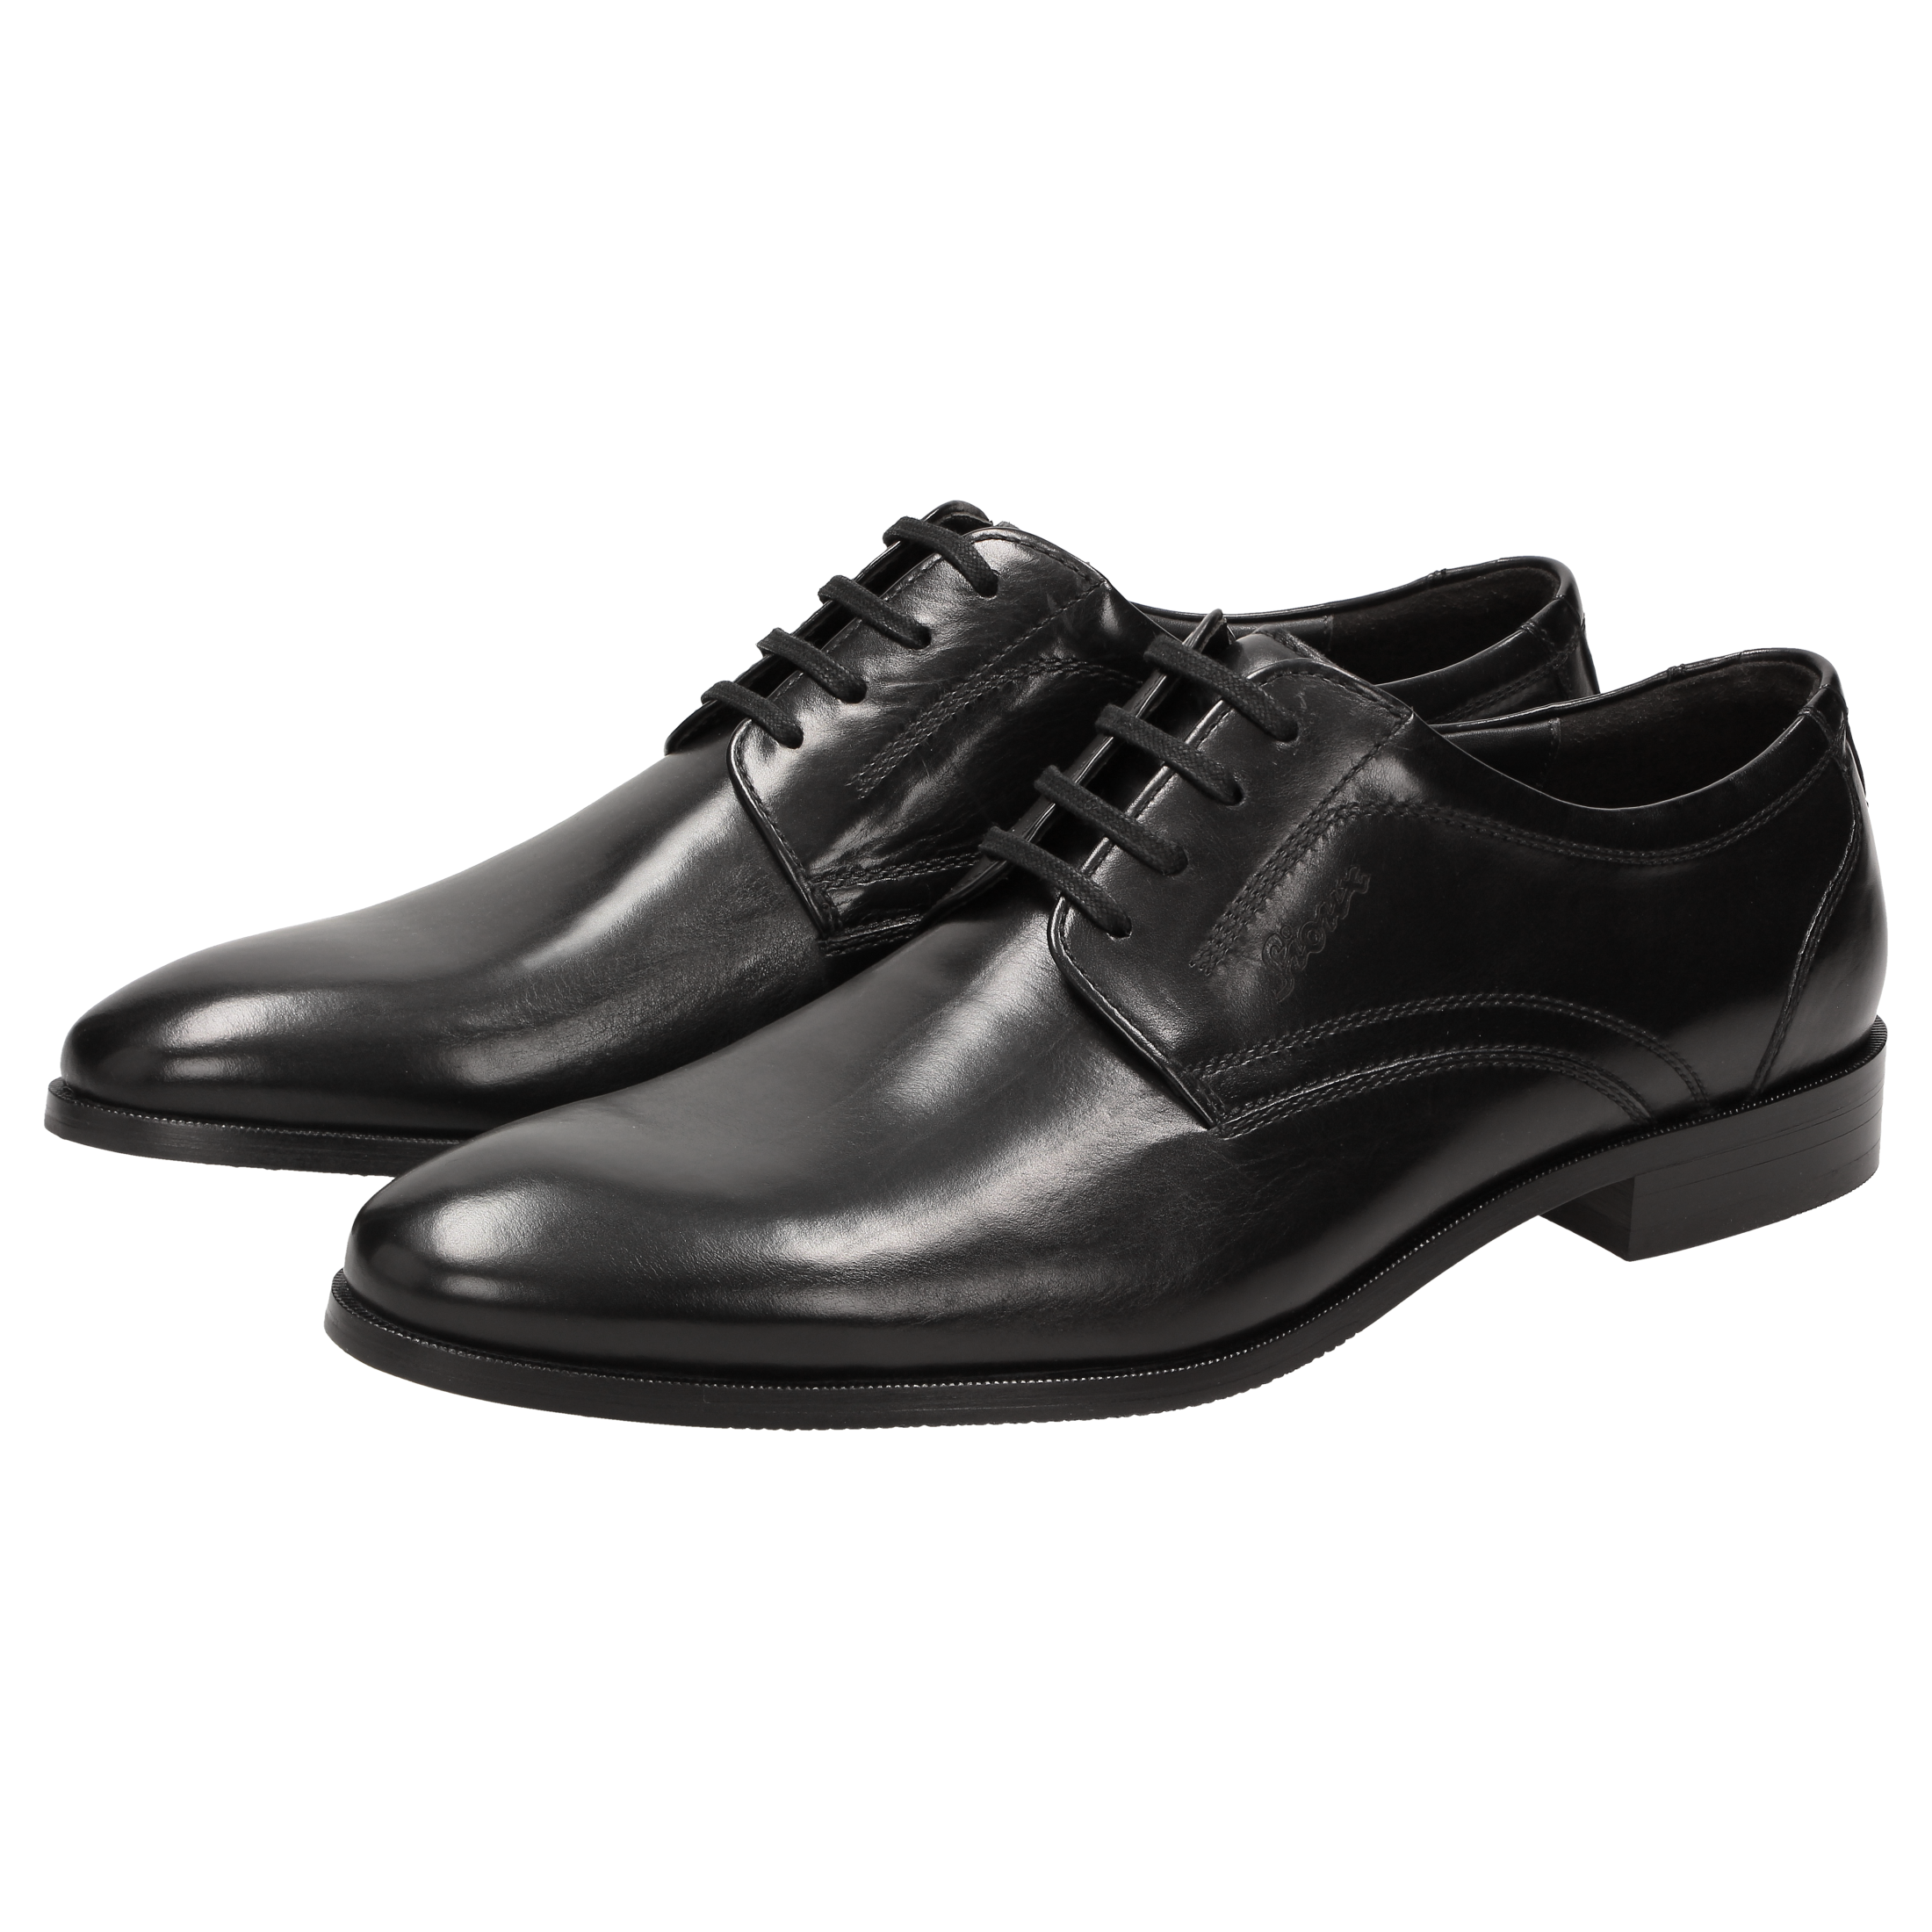 Prada Klassische Derby-Schuhe in Schwarz für Herren Herren Schuhe Schnürschuhe Derby Schuhe 